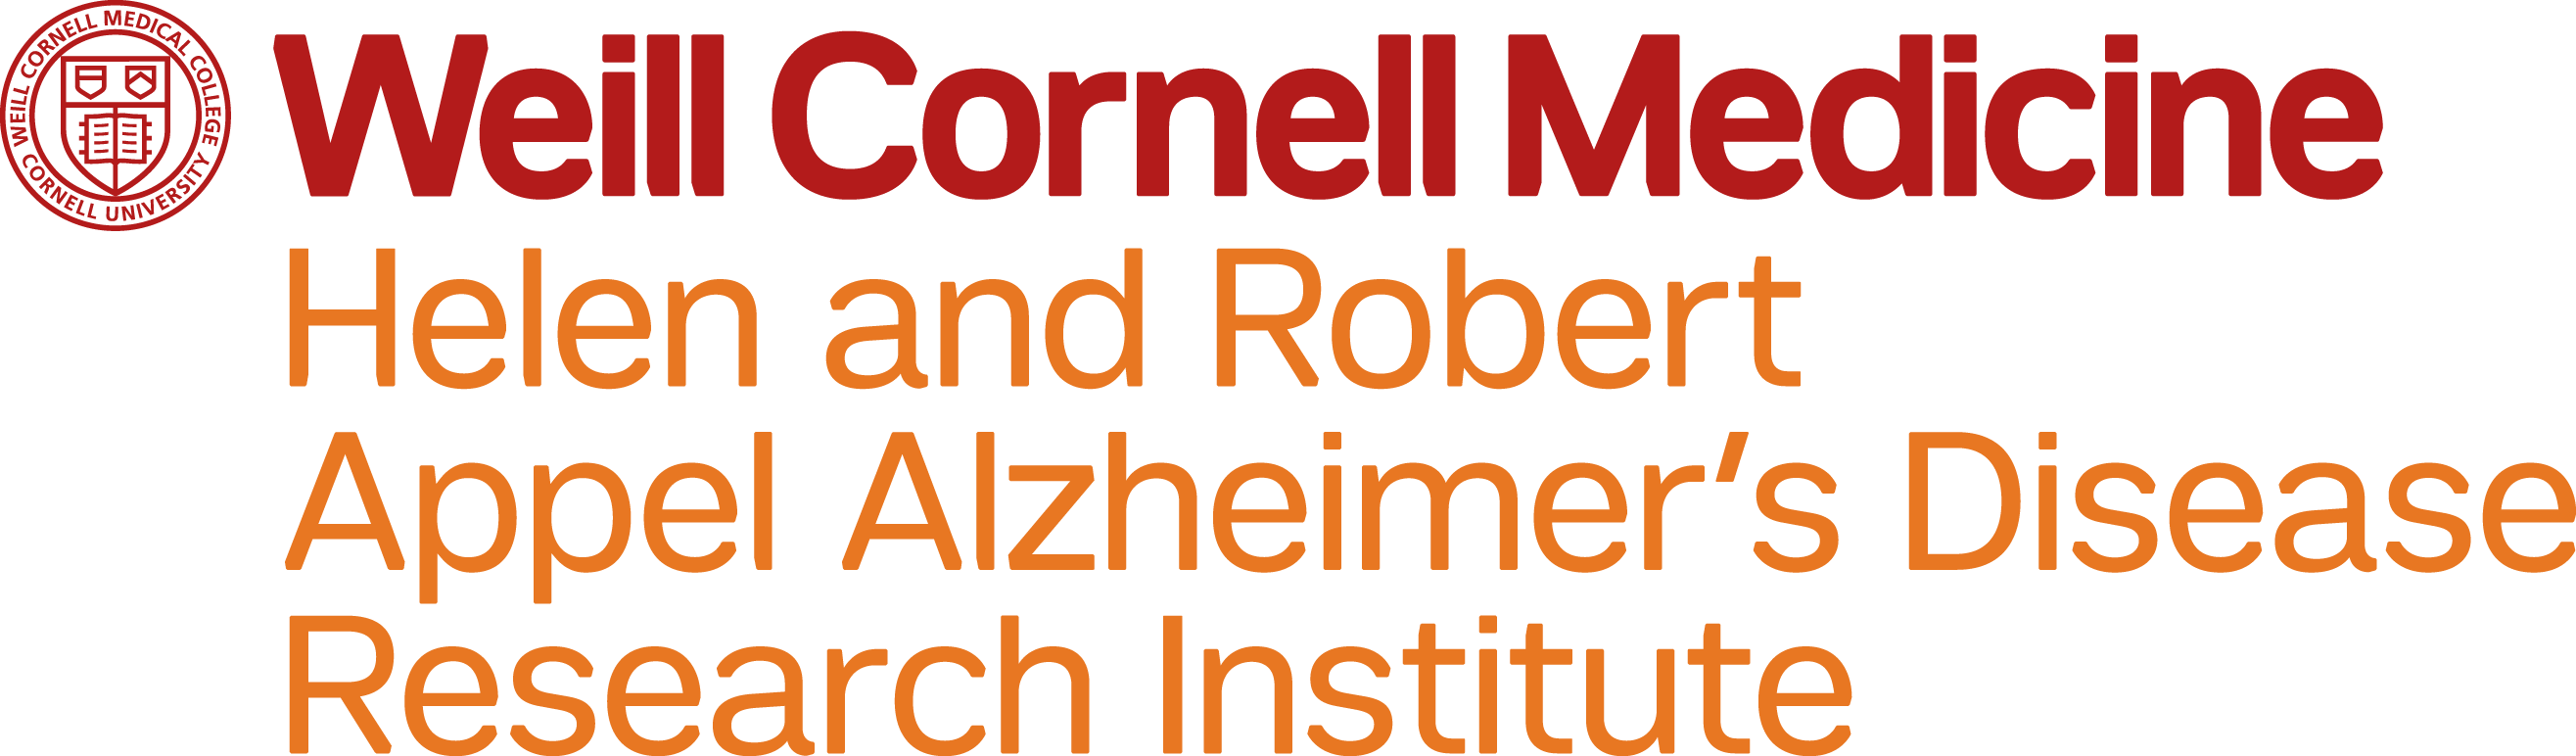 Helen & Robert Appel Alzheimer’s Disease Research Institute